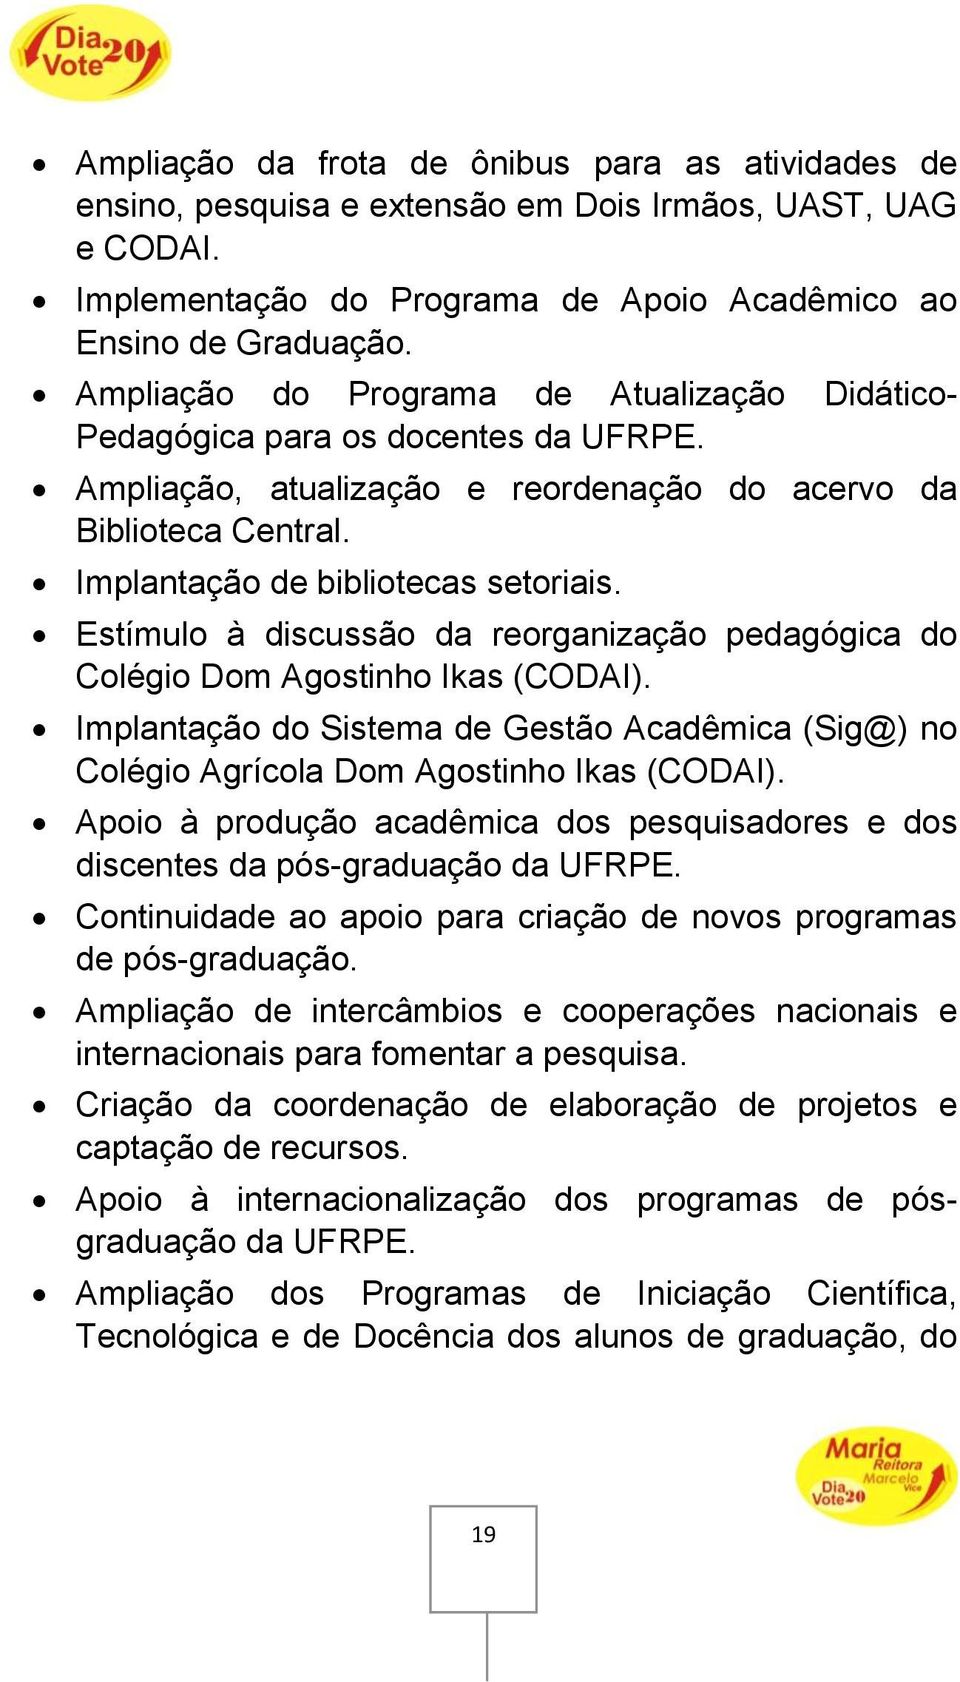 Estímulo à discussão da reorganização pedagógica do Colégio Dom Agostinho Ikas (CODAI). Implantação do Sistema de Gestão Acadêmica (Sig@) no Colégio Agrícola Dom Agostinho Ikas (CODAI).